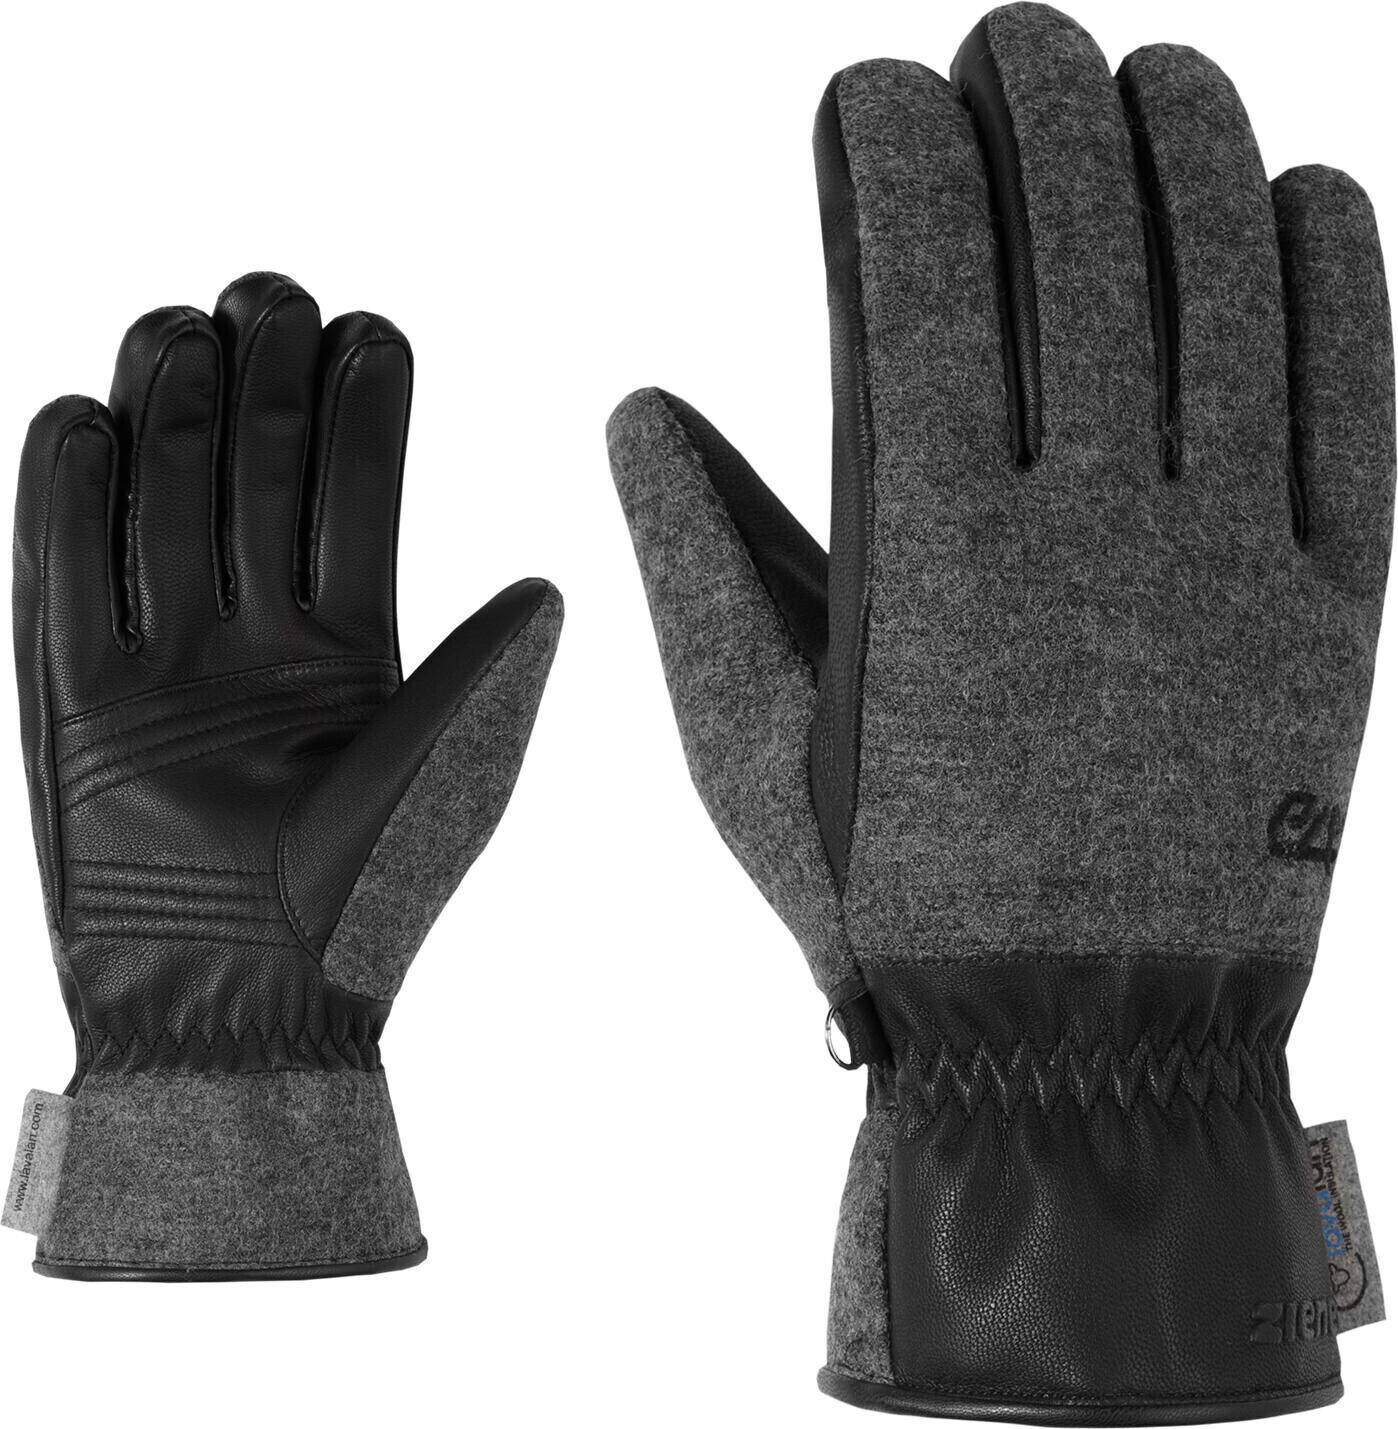 Ziener Isen AW Glove Multisport black ab 26,60 € | Preisvergleich bei